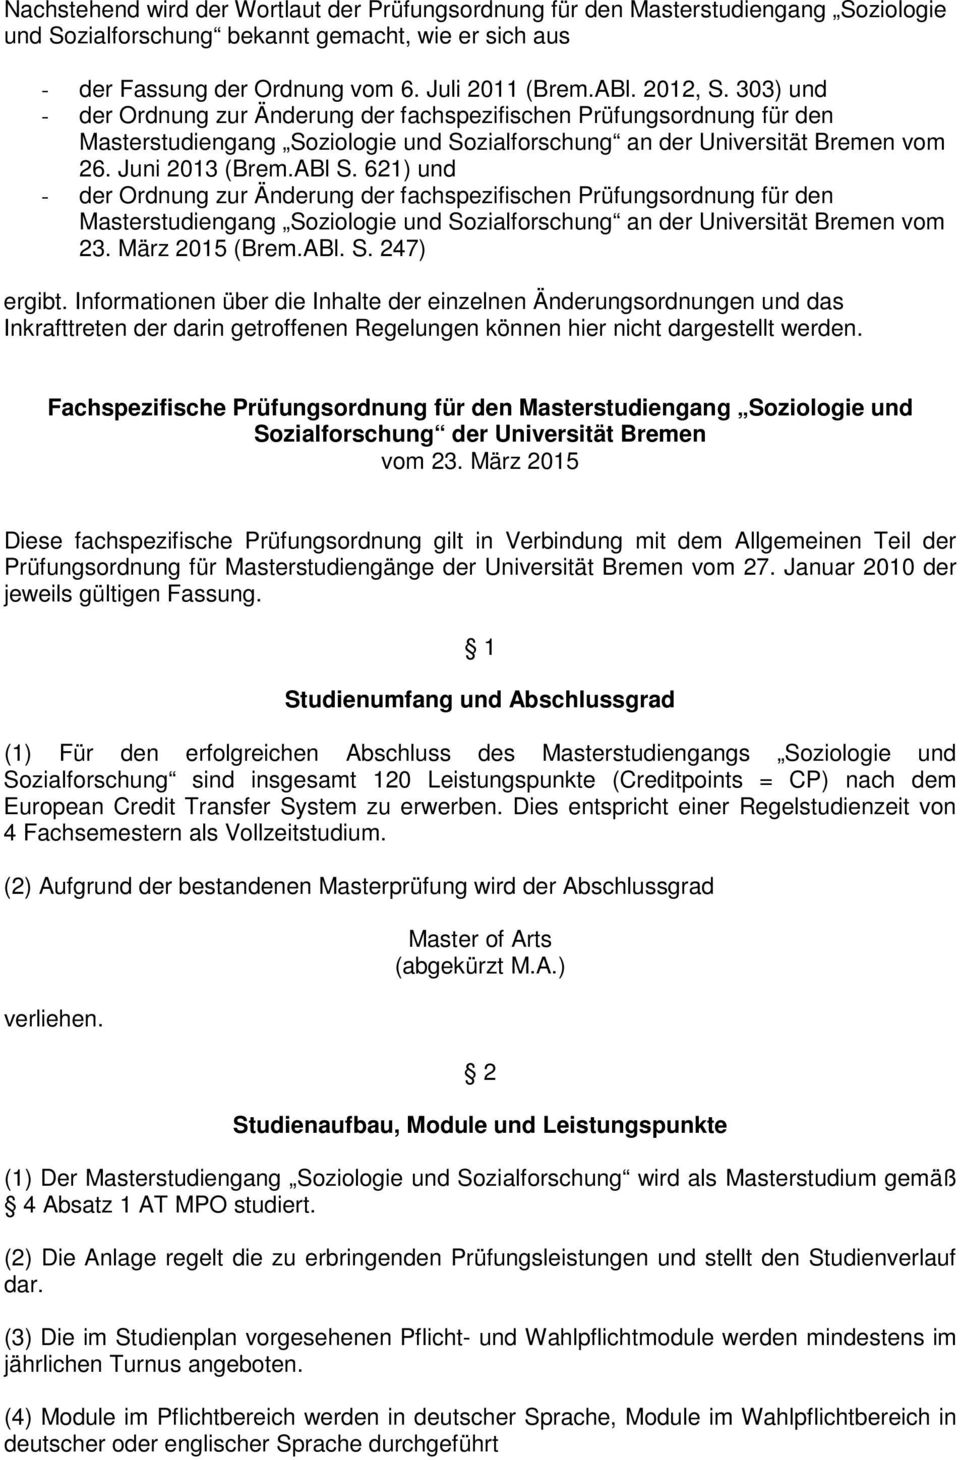 621) und - der Ordnung zur Änderung der fachspezifischen Prüfungsordnung für den Masterstudiengang Soziologie und Sozialforschung an der Universität Bremen vom 23. März 2015 (Brem.ABl. S. 247) ergibt.